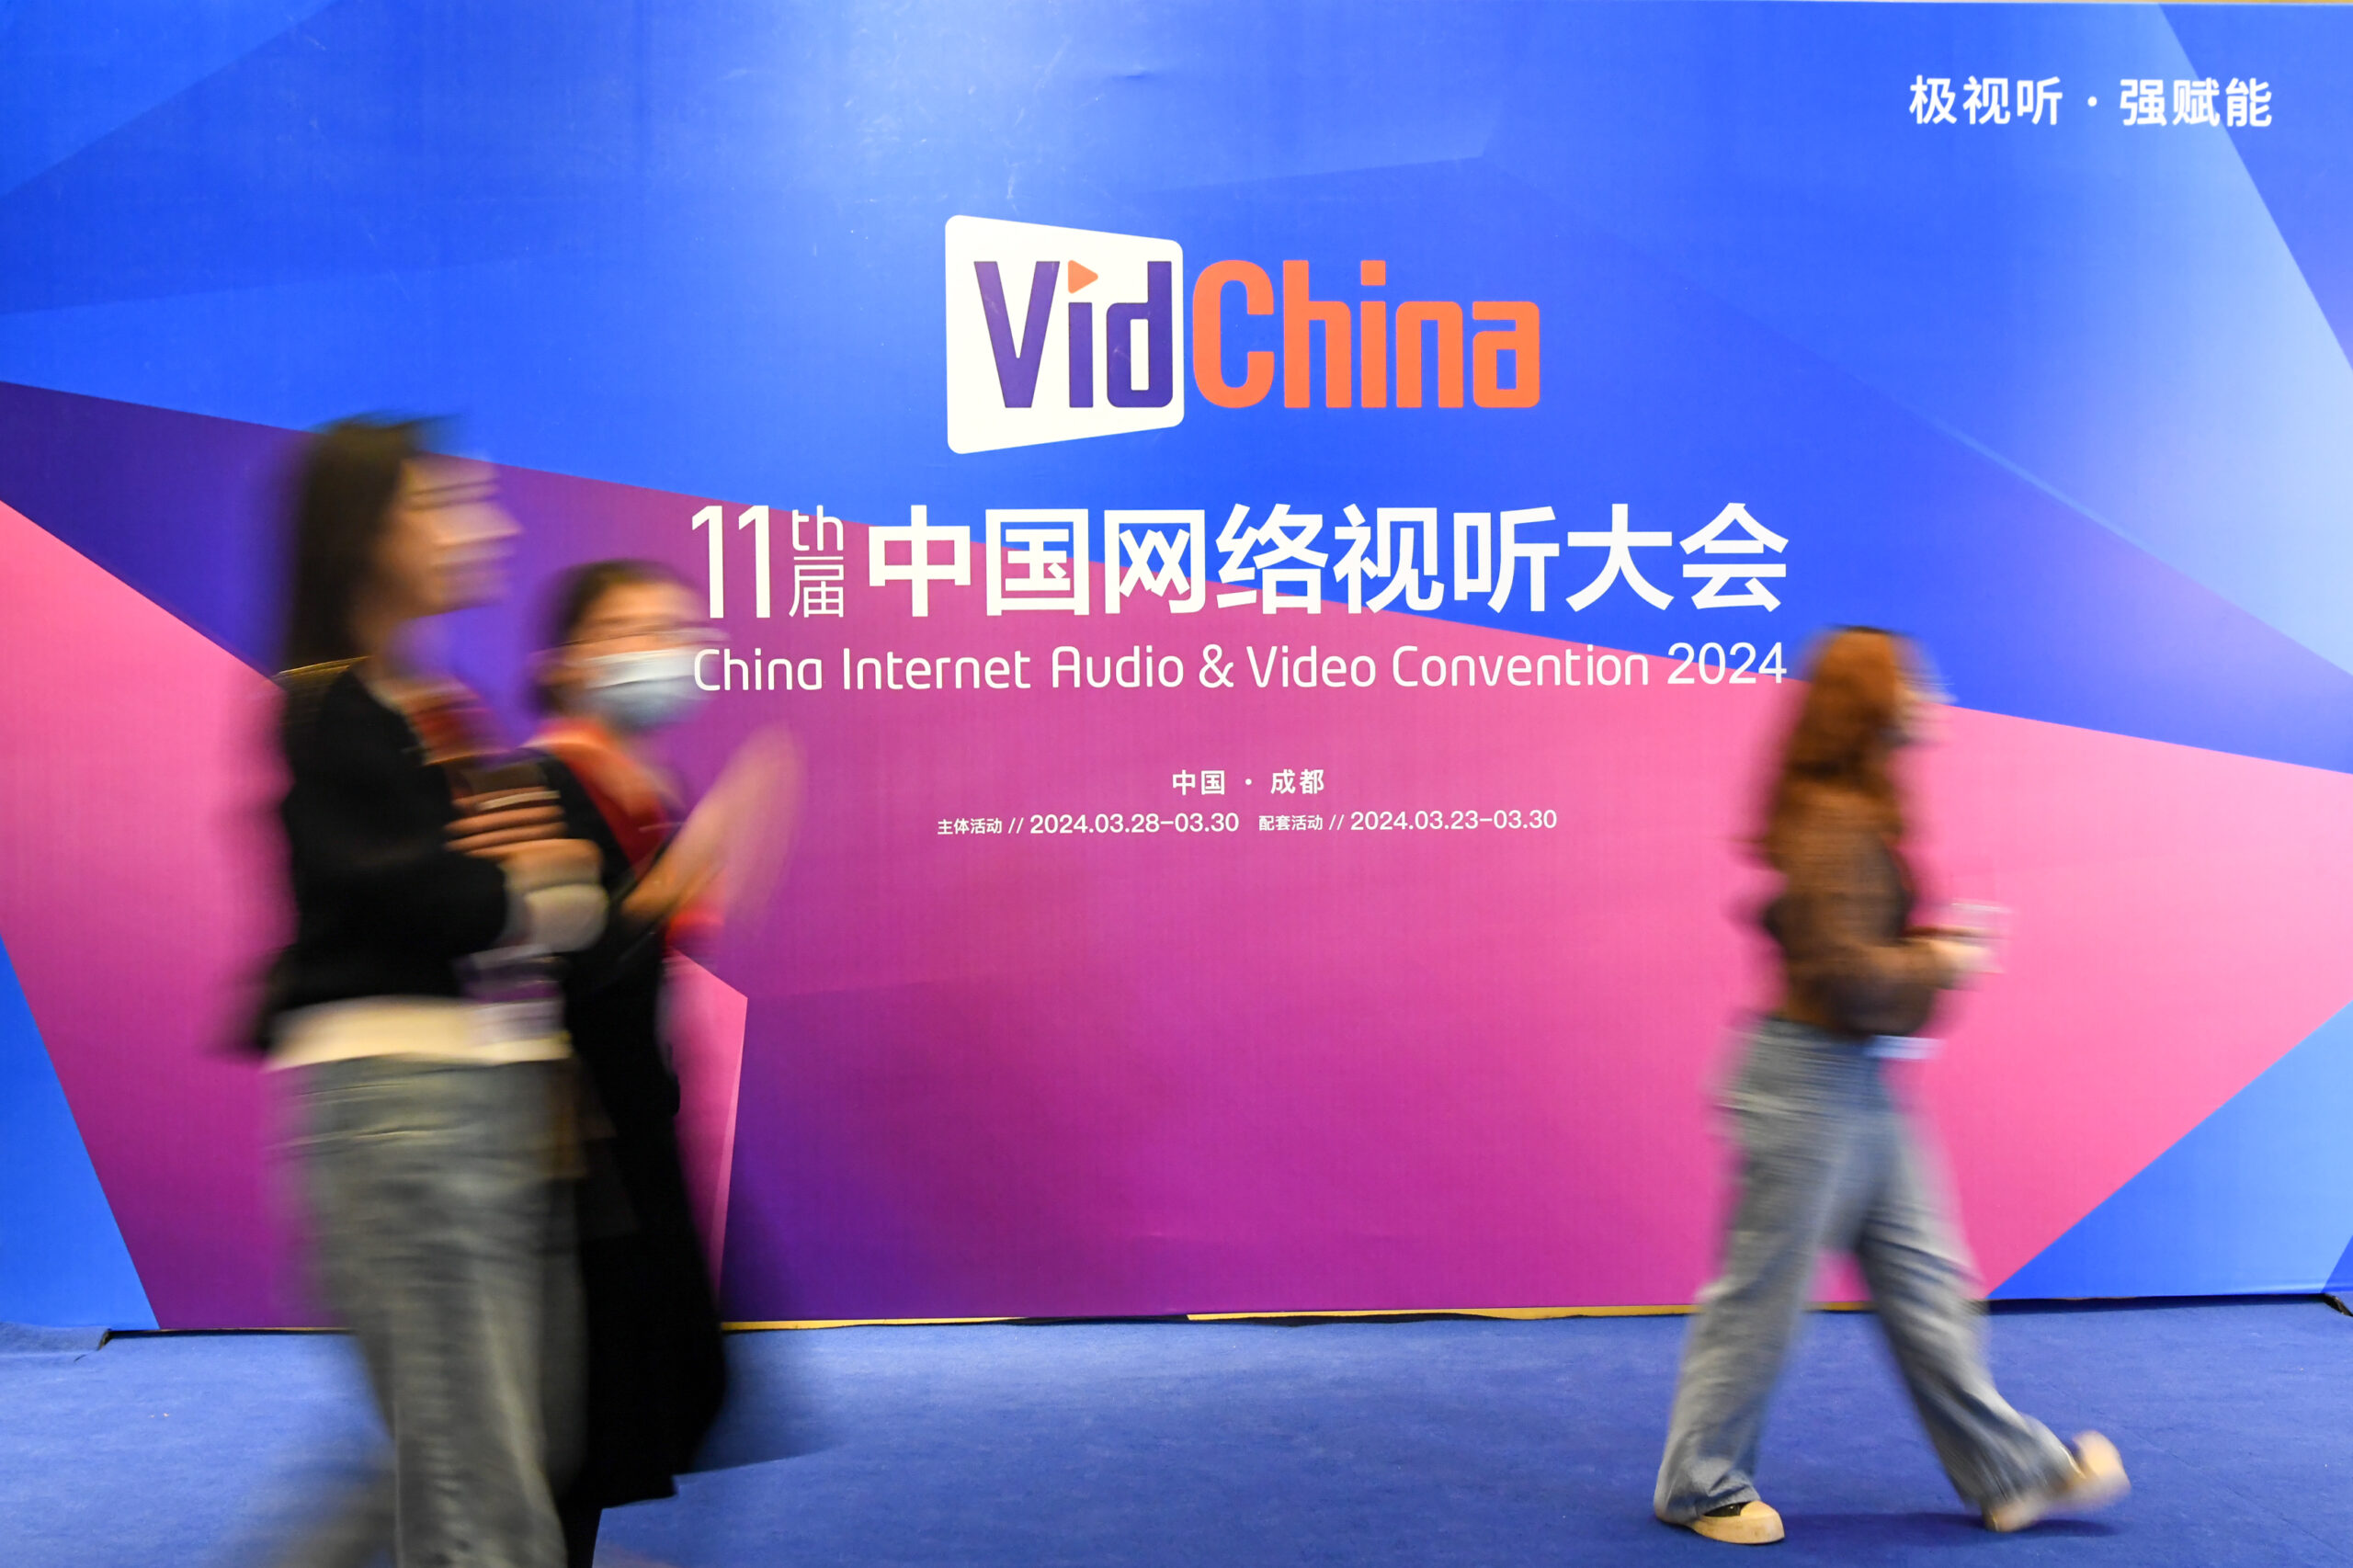 การประชุม 'สื่อเสียง-วิดีโออินเทอร์เน็ต' ของจีน มุ่งเน้นเทคโนโลยีใหม่